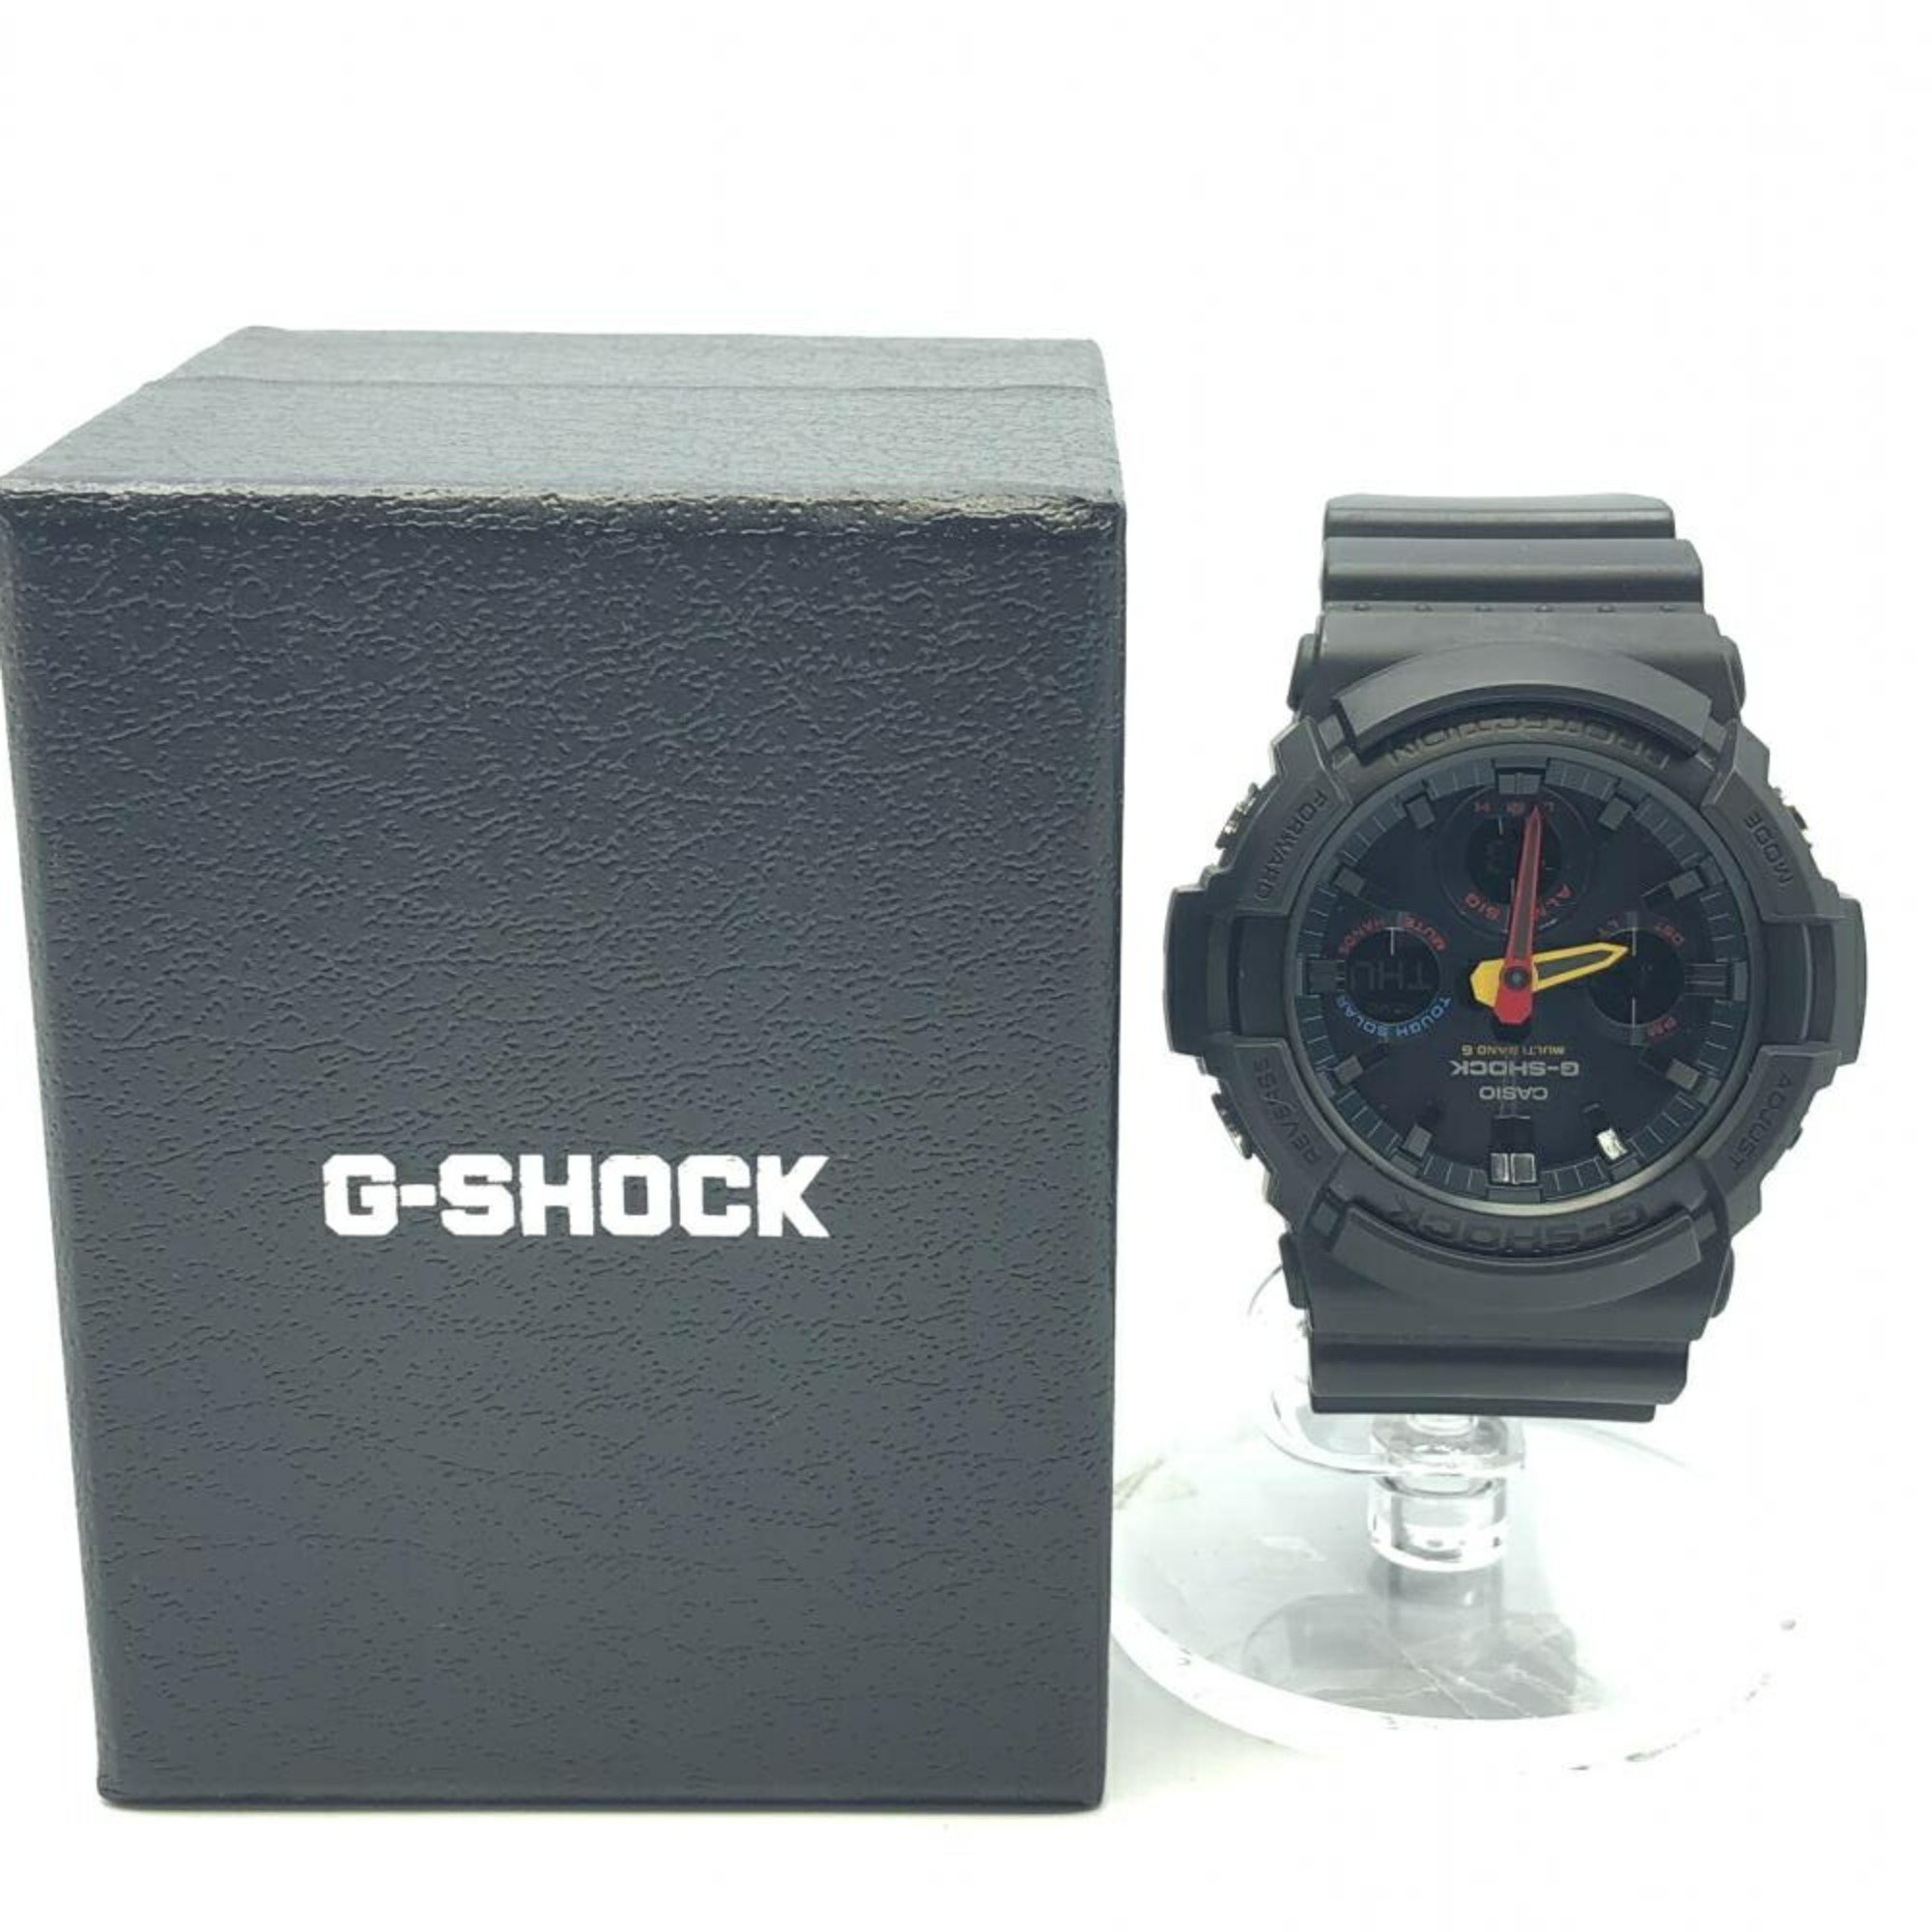 Casio G-SHOCK watch GAW-100BMC-1AJF G-Shock black